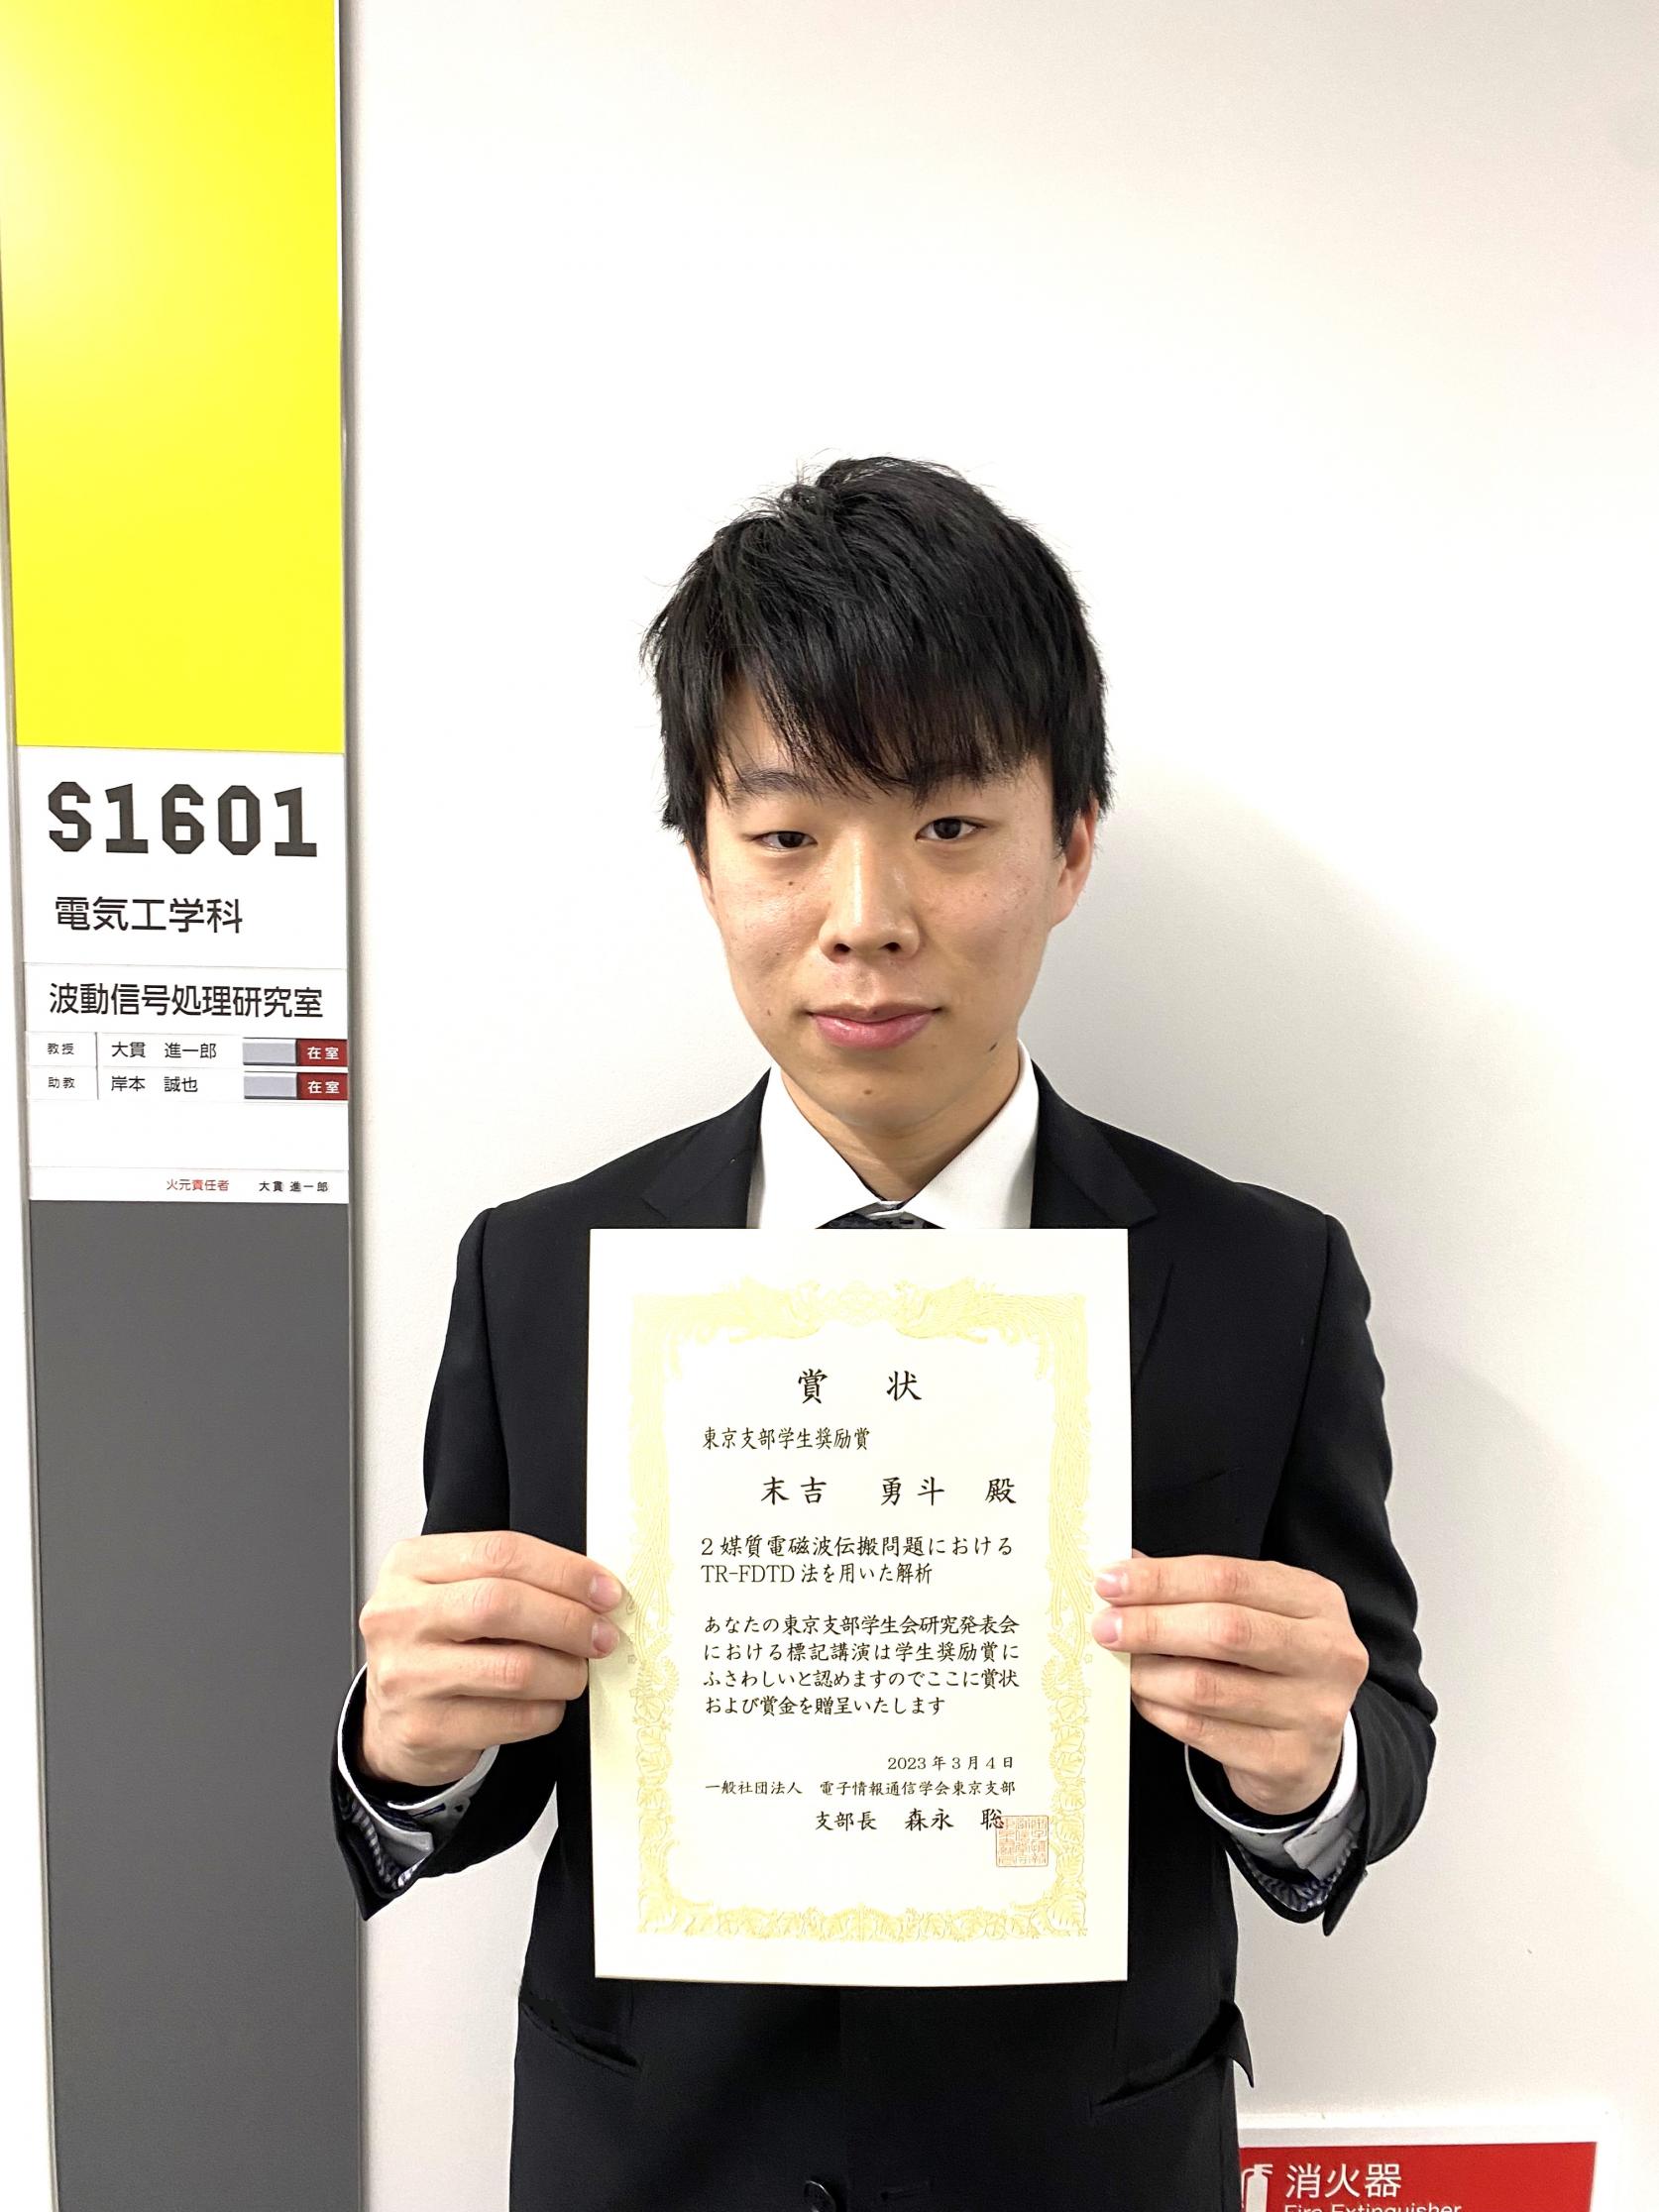 電気工学科4年生の末吉勇斗さんが、第28回 電子情報通信学会 東京支部 学生研究発表会において、東京支部学生奨励賞を受賞しました。